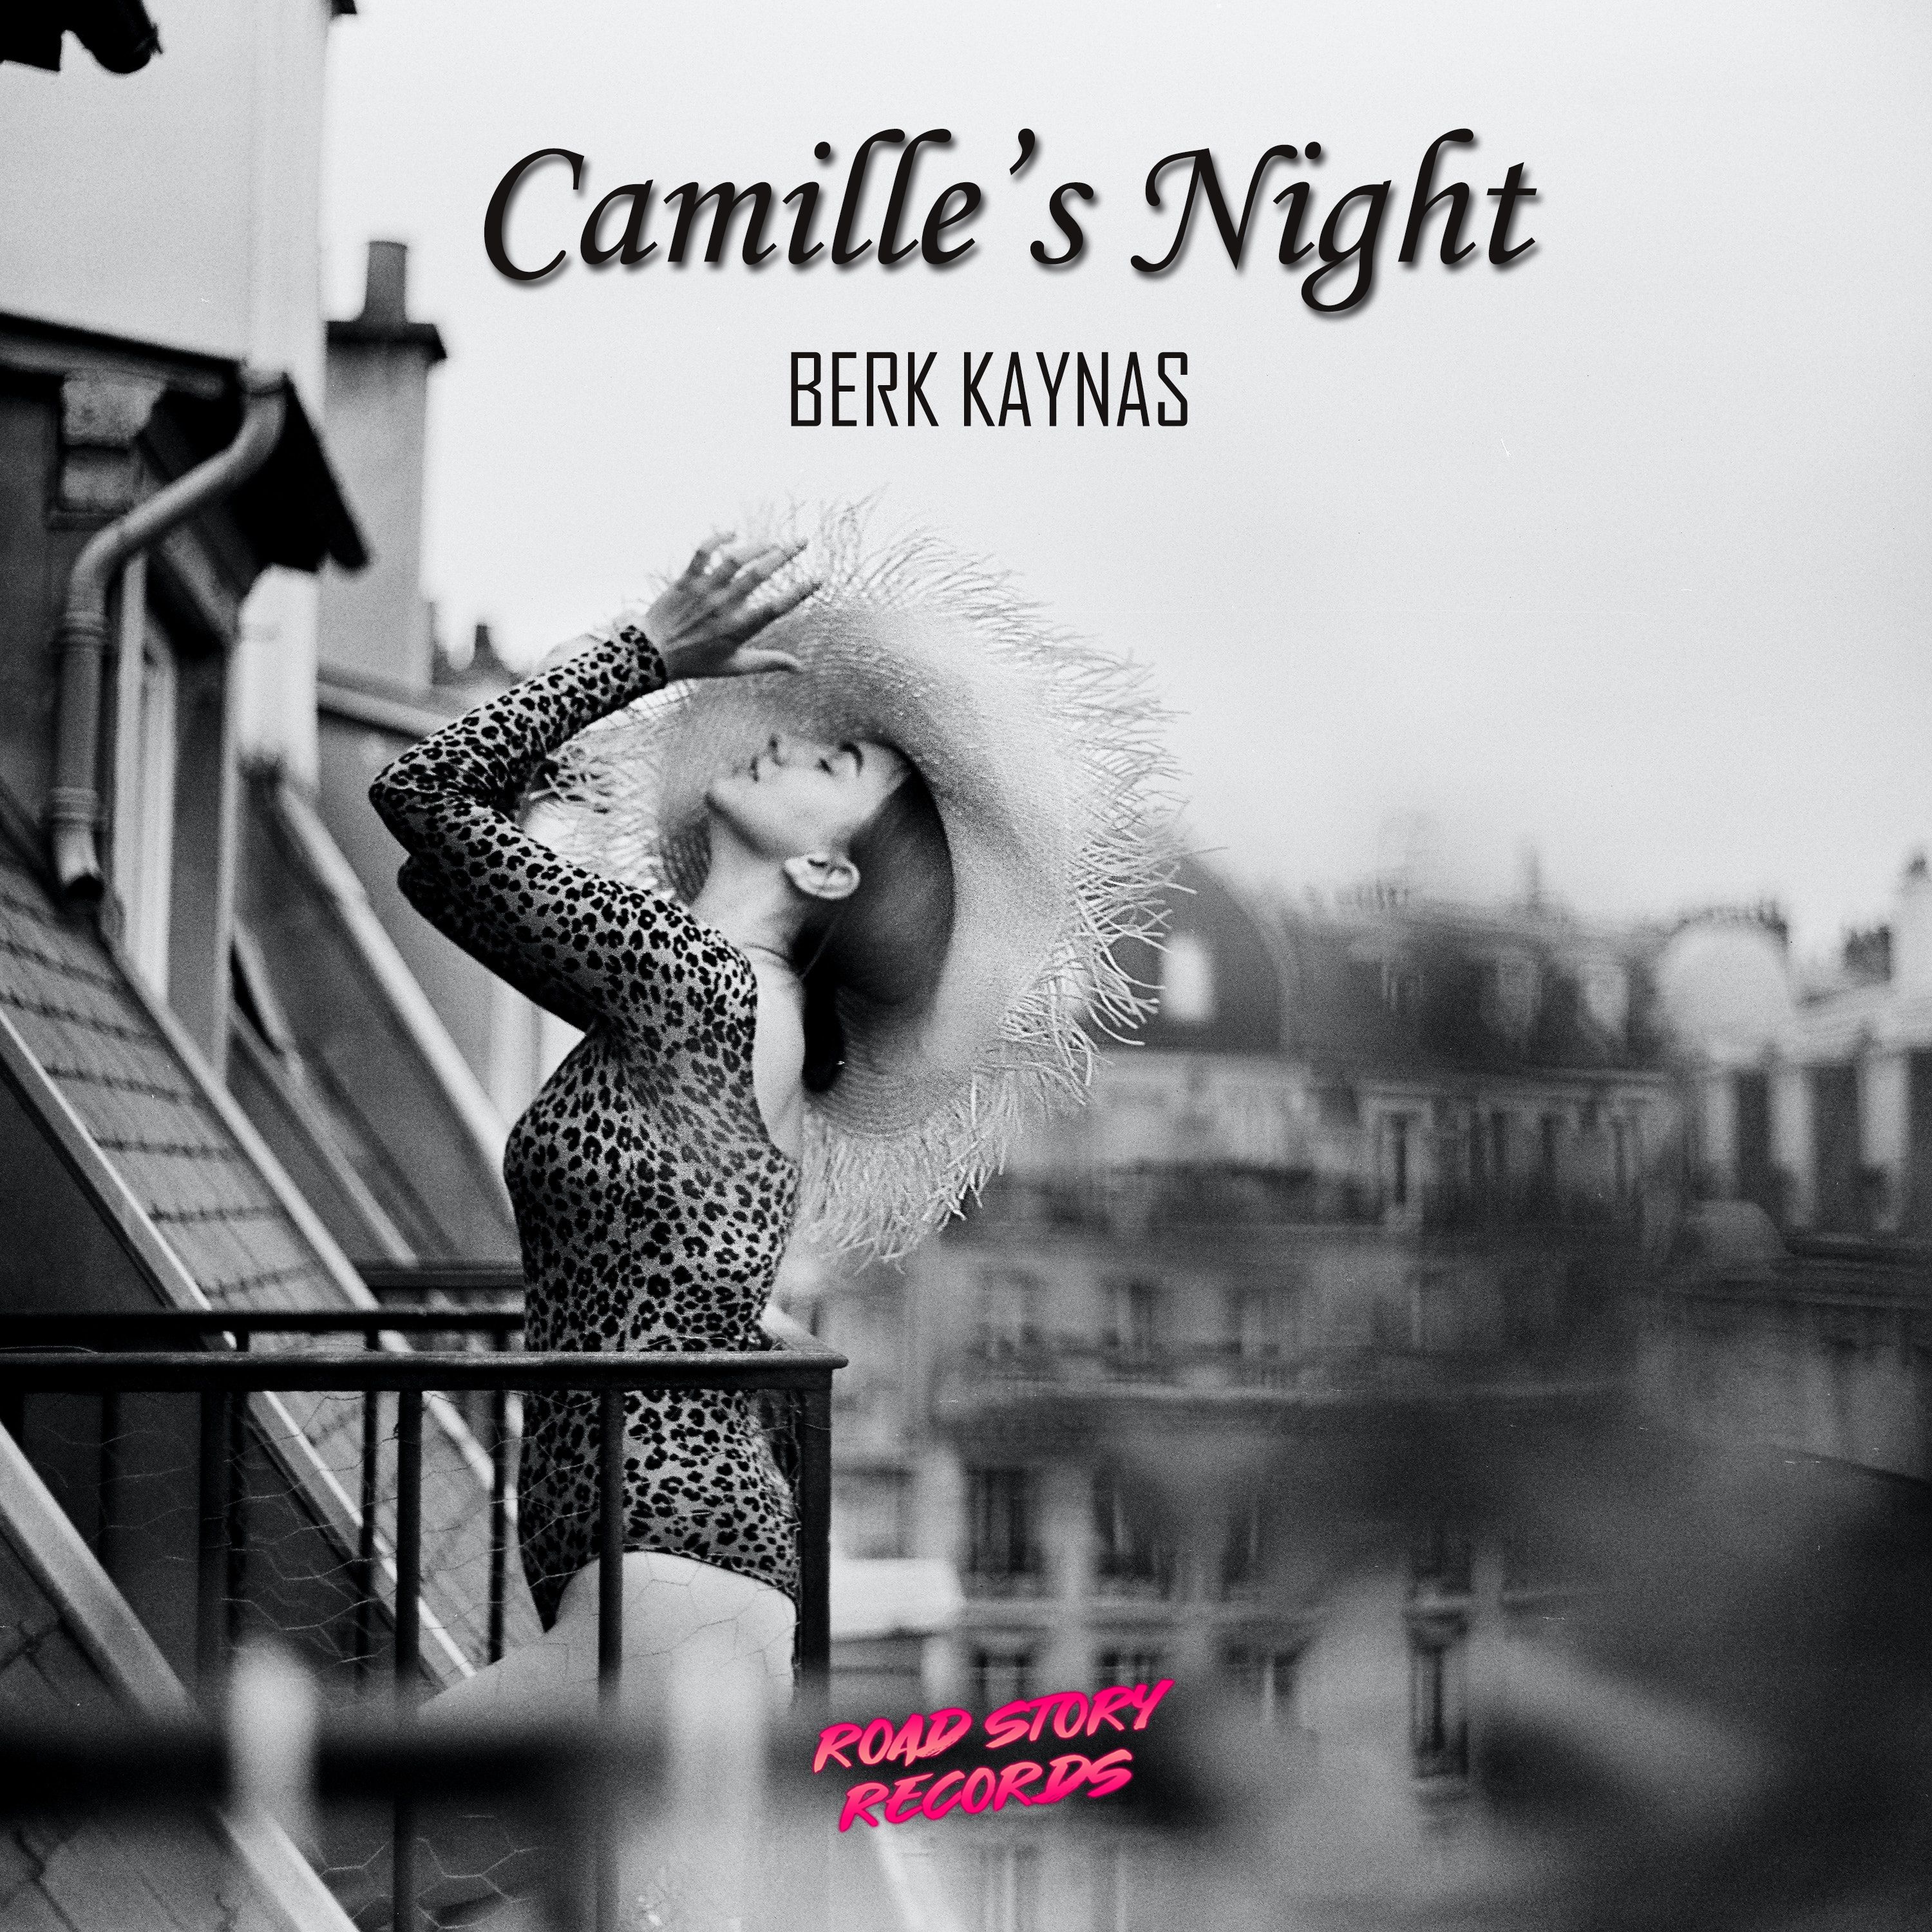 Stiahnuť ▼ Berk Kaynas - Camille's Night